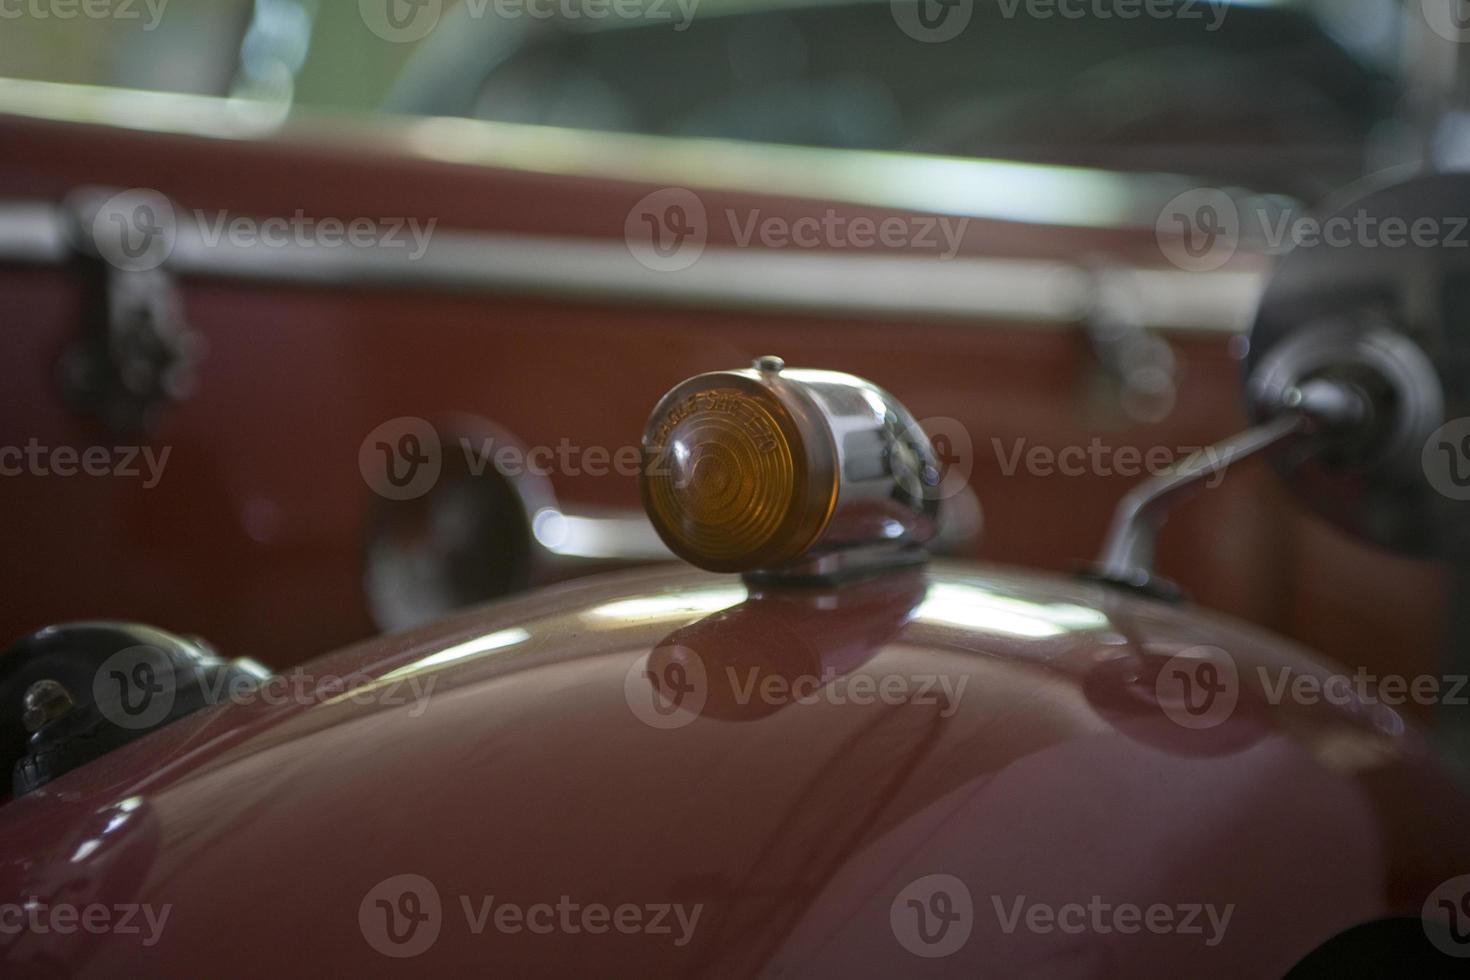 vecchio Vintage ▾ metallo dettagli auto nel il Museo avvicinamento foto